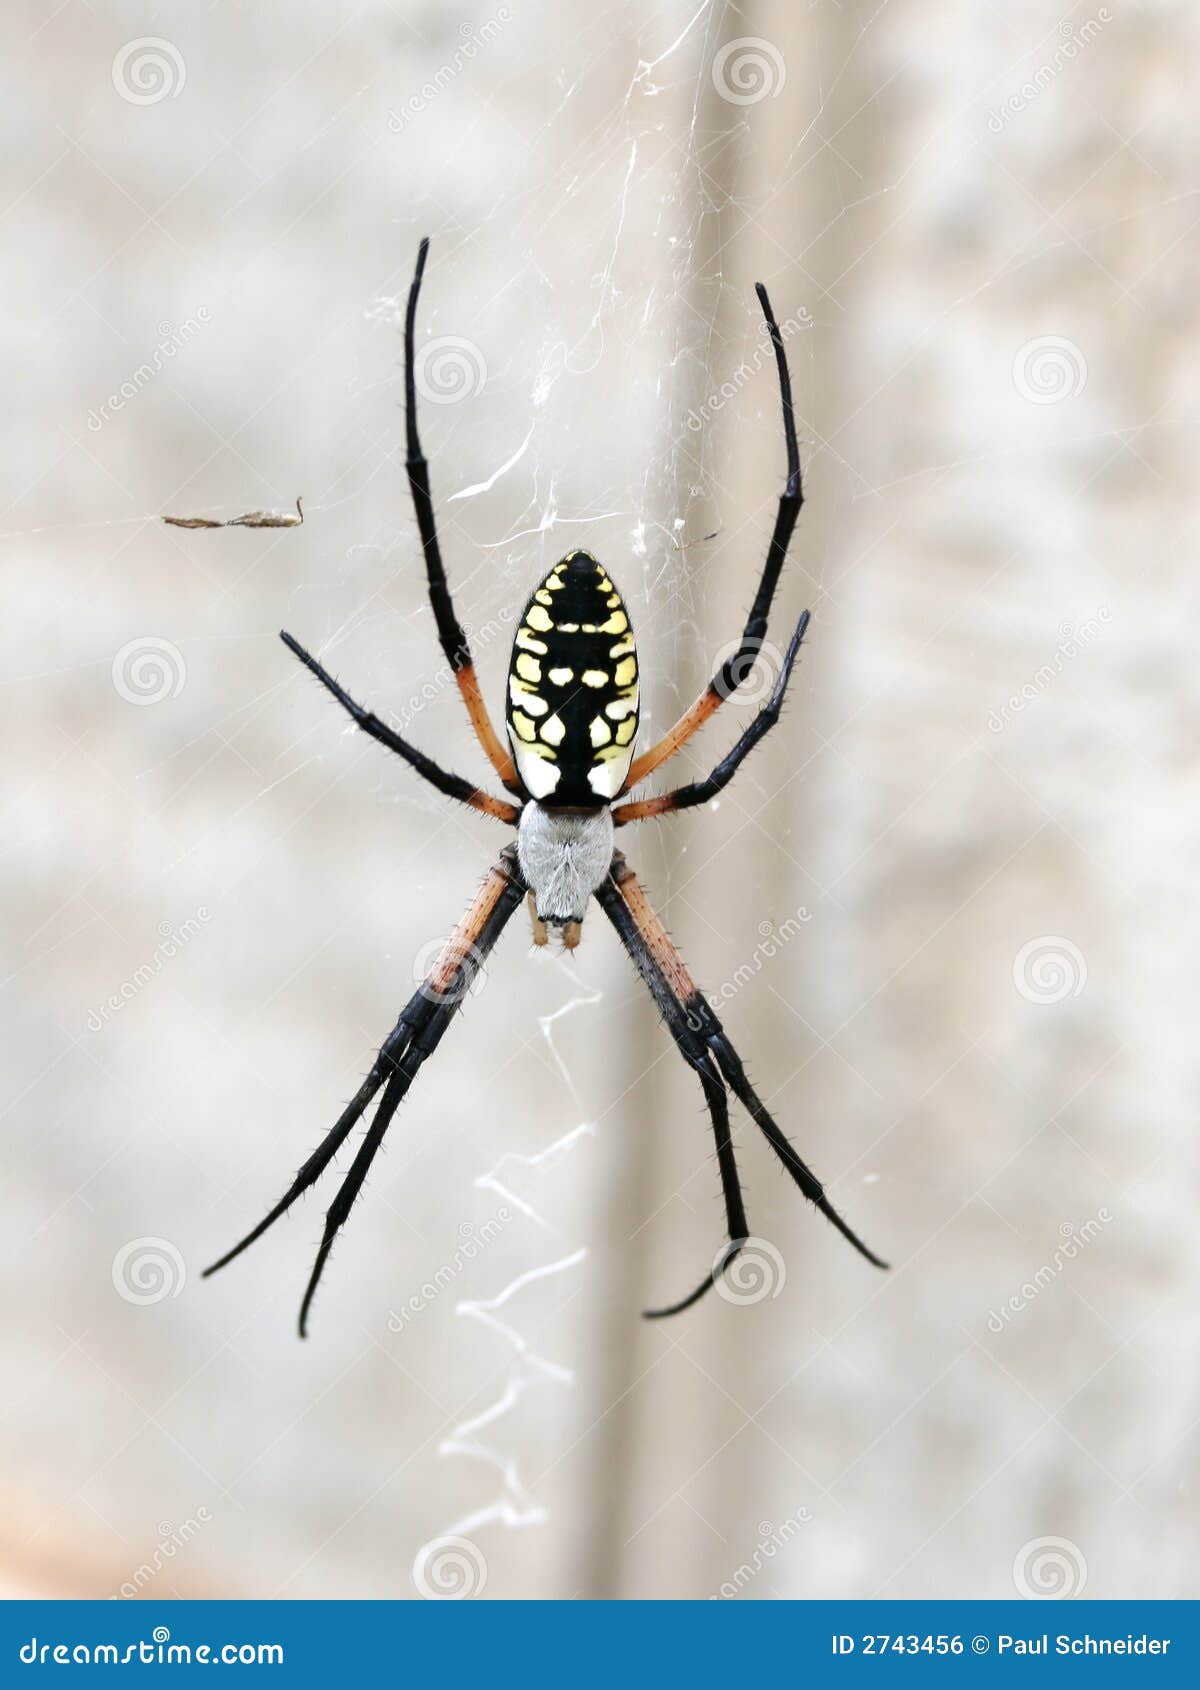 spider arachnid garden web